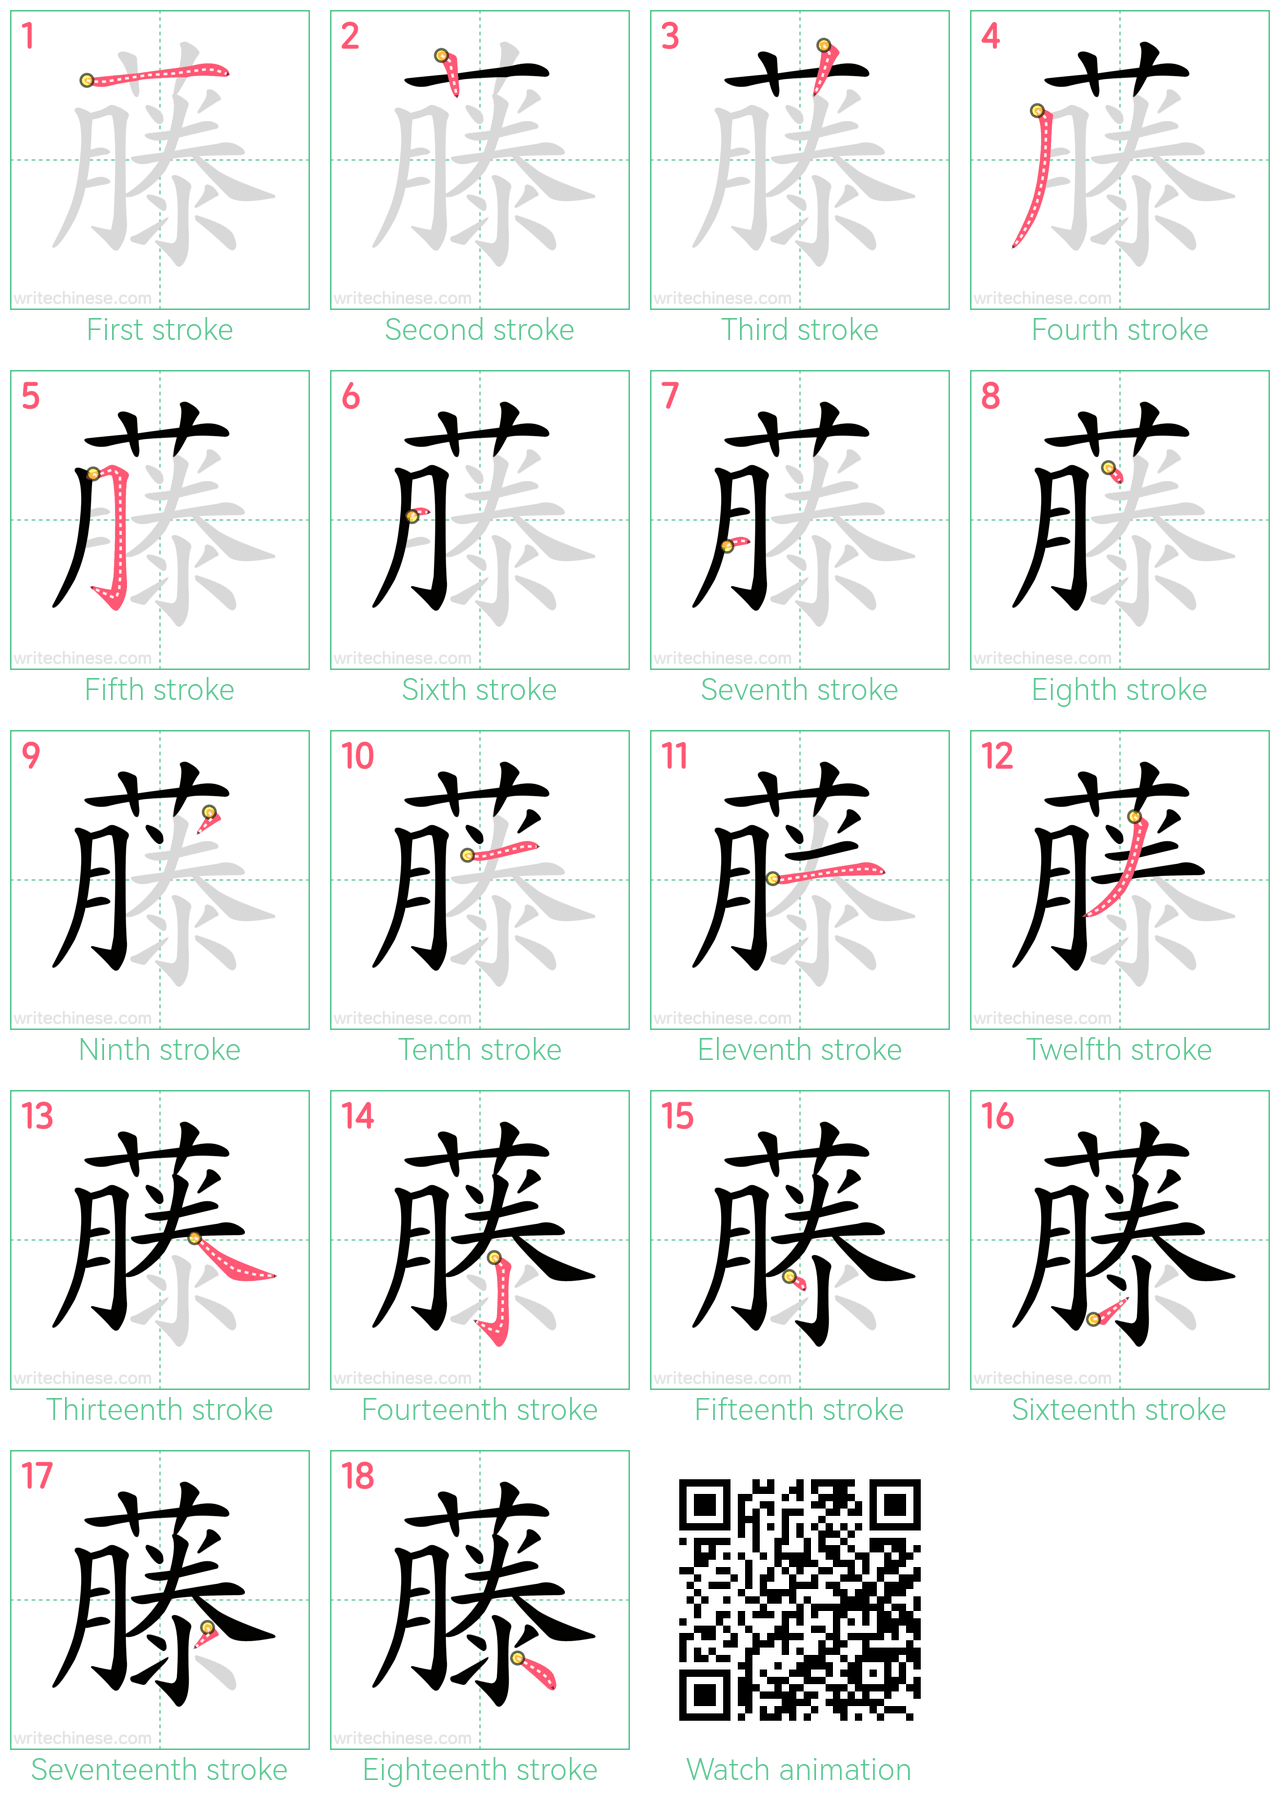 藤 step-by-step stroke order diagrams